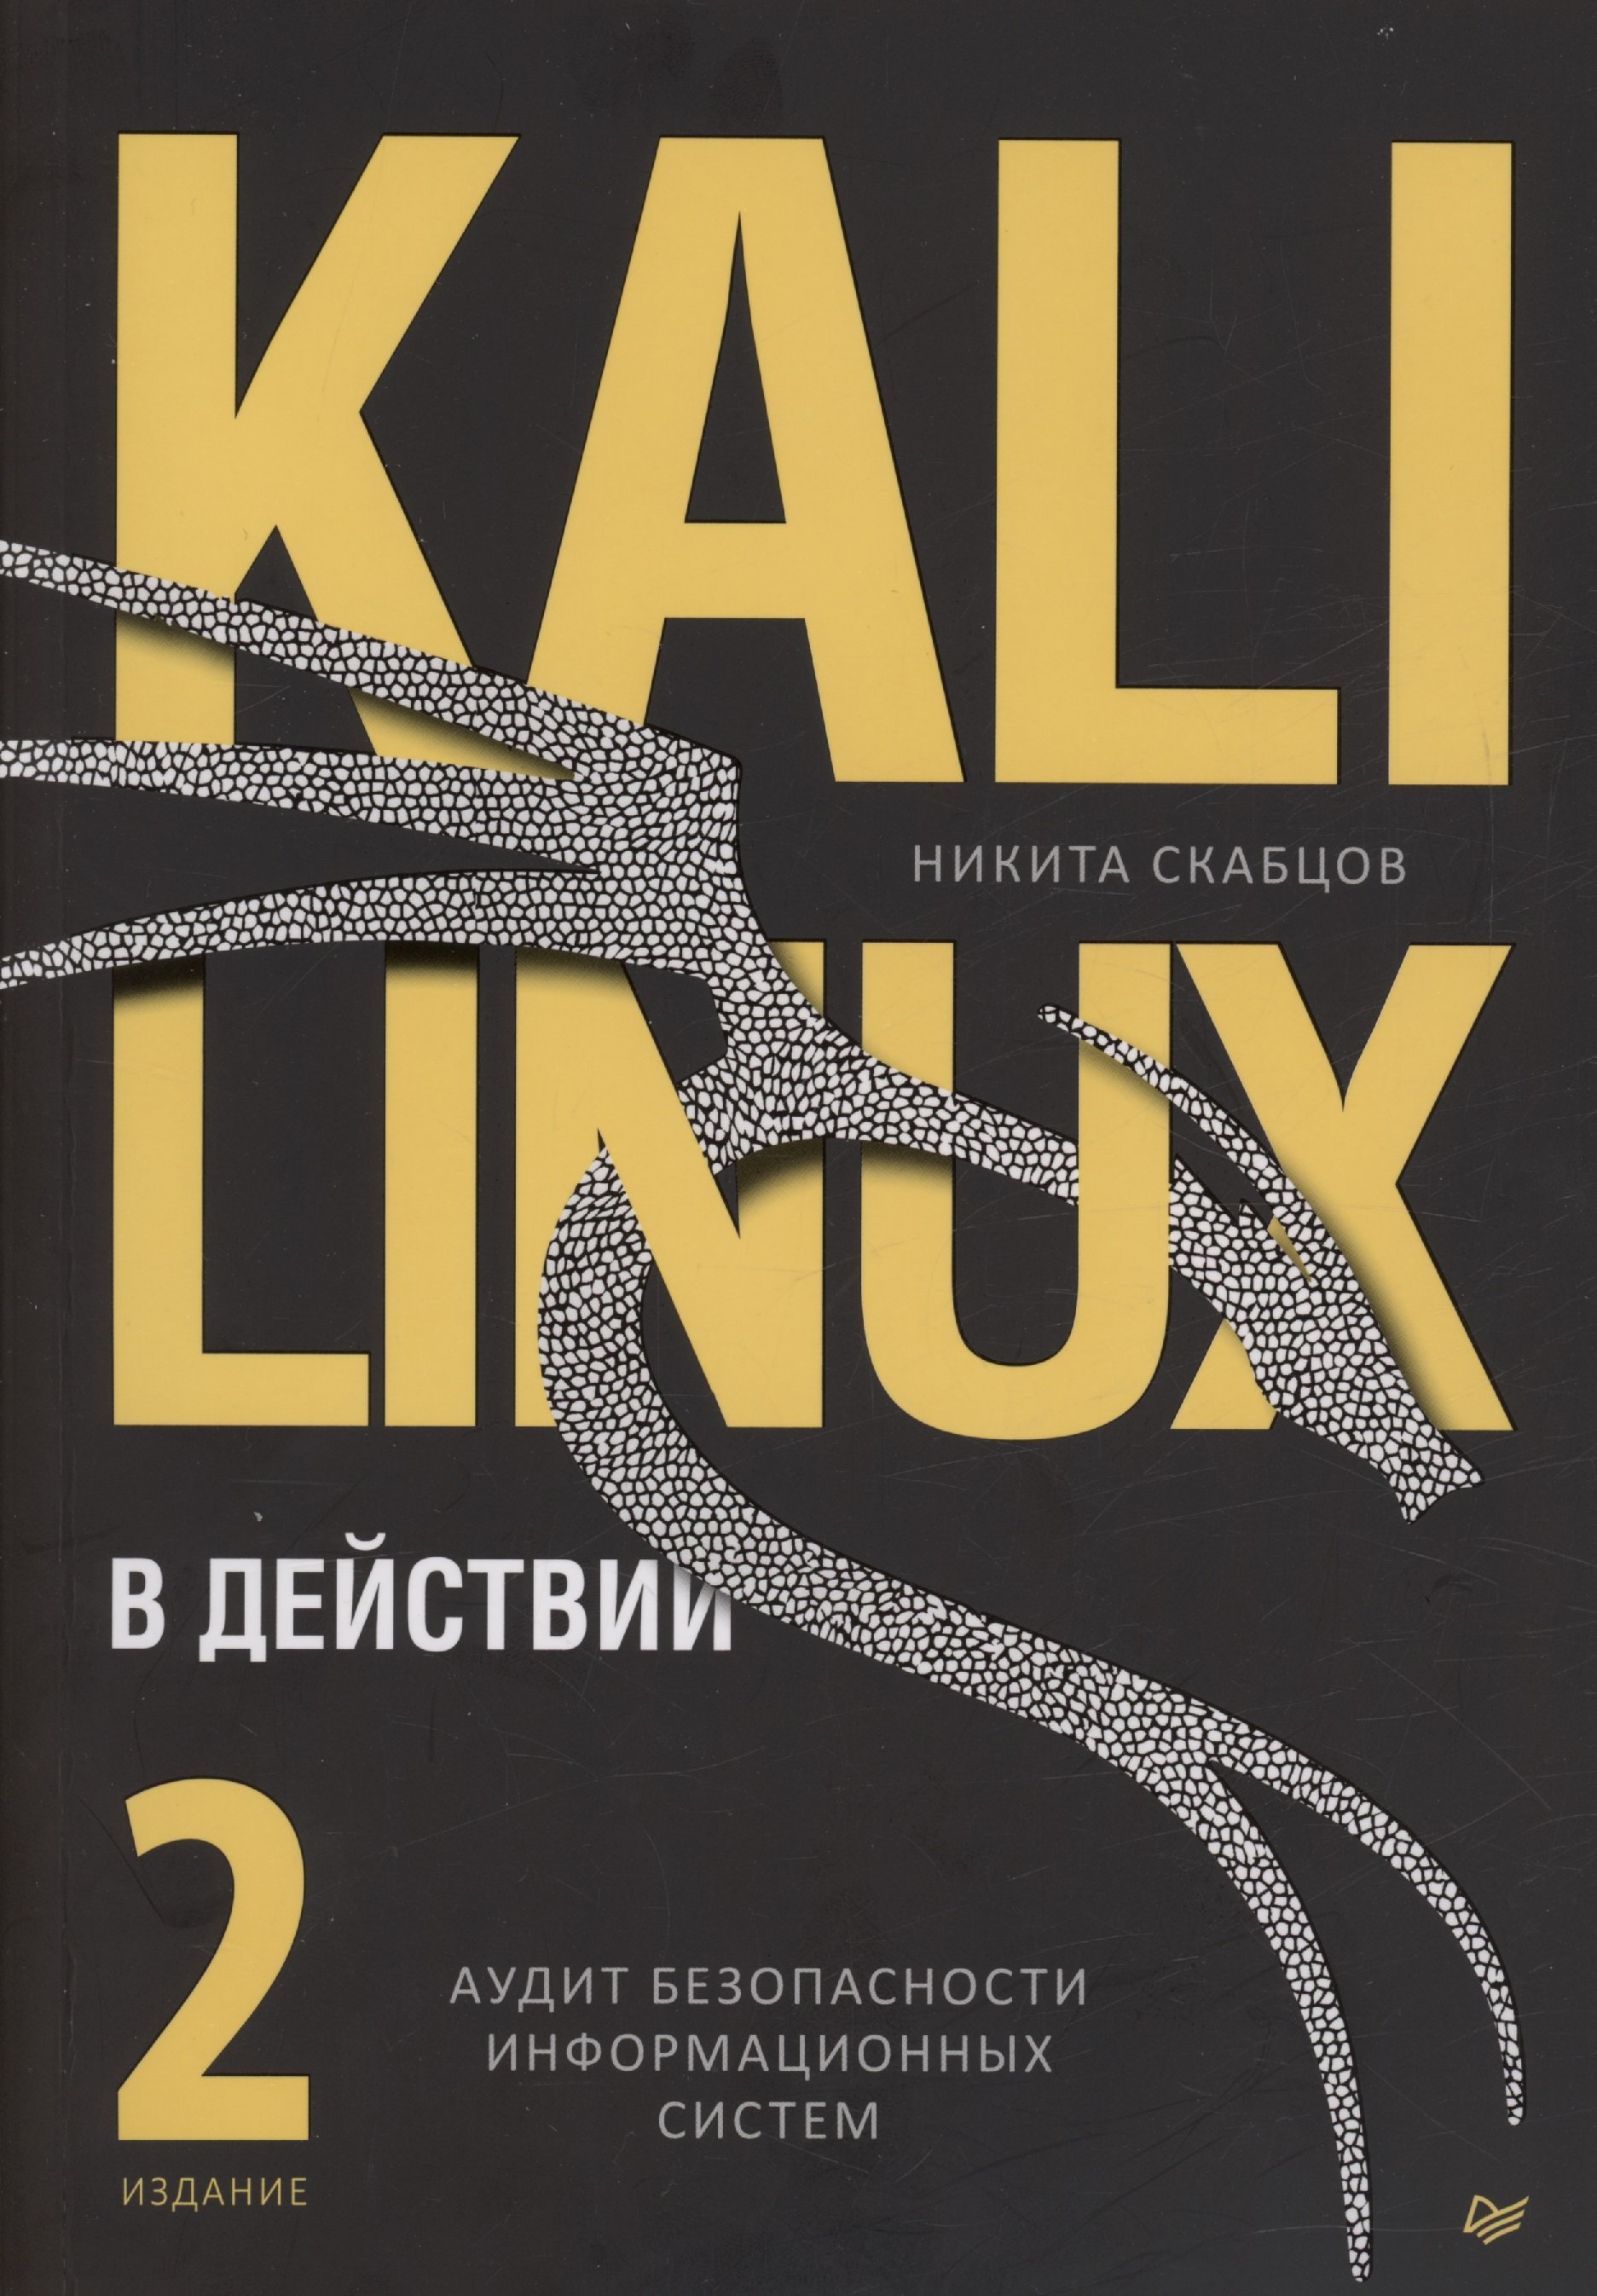 Kali Linux  .    